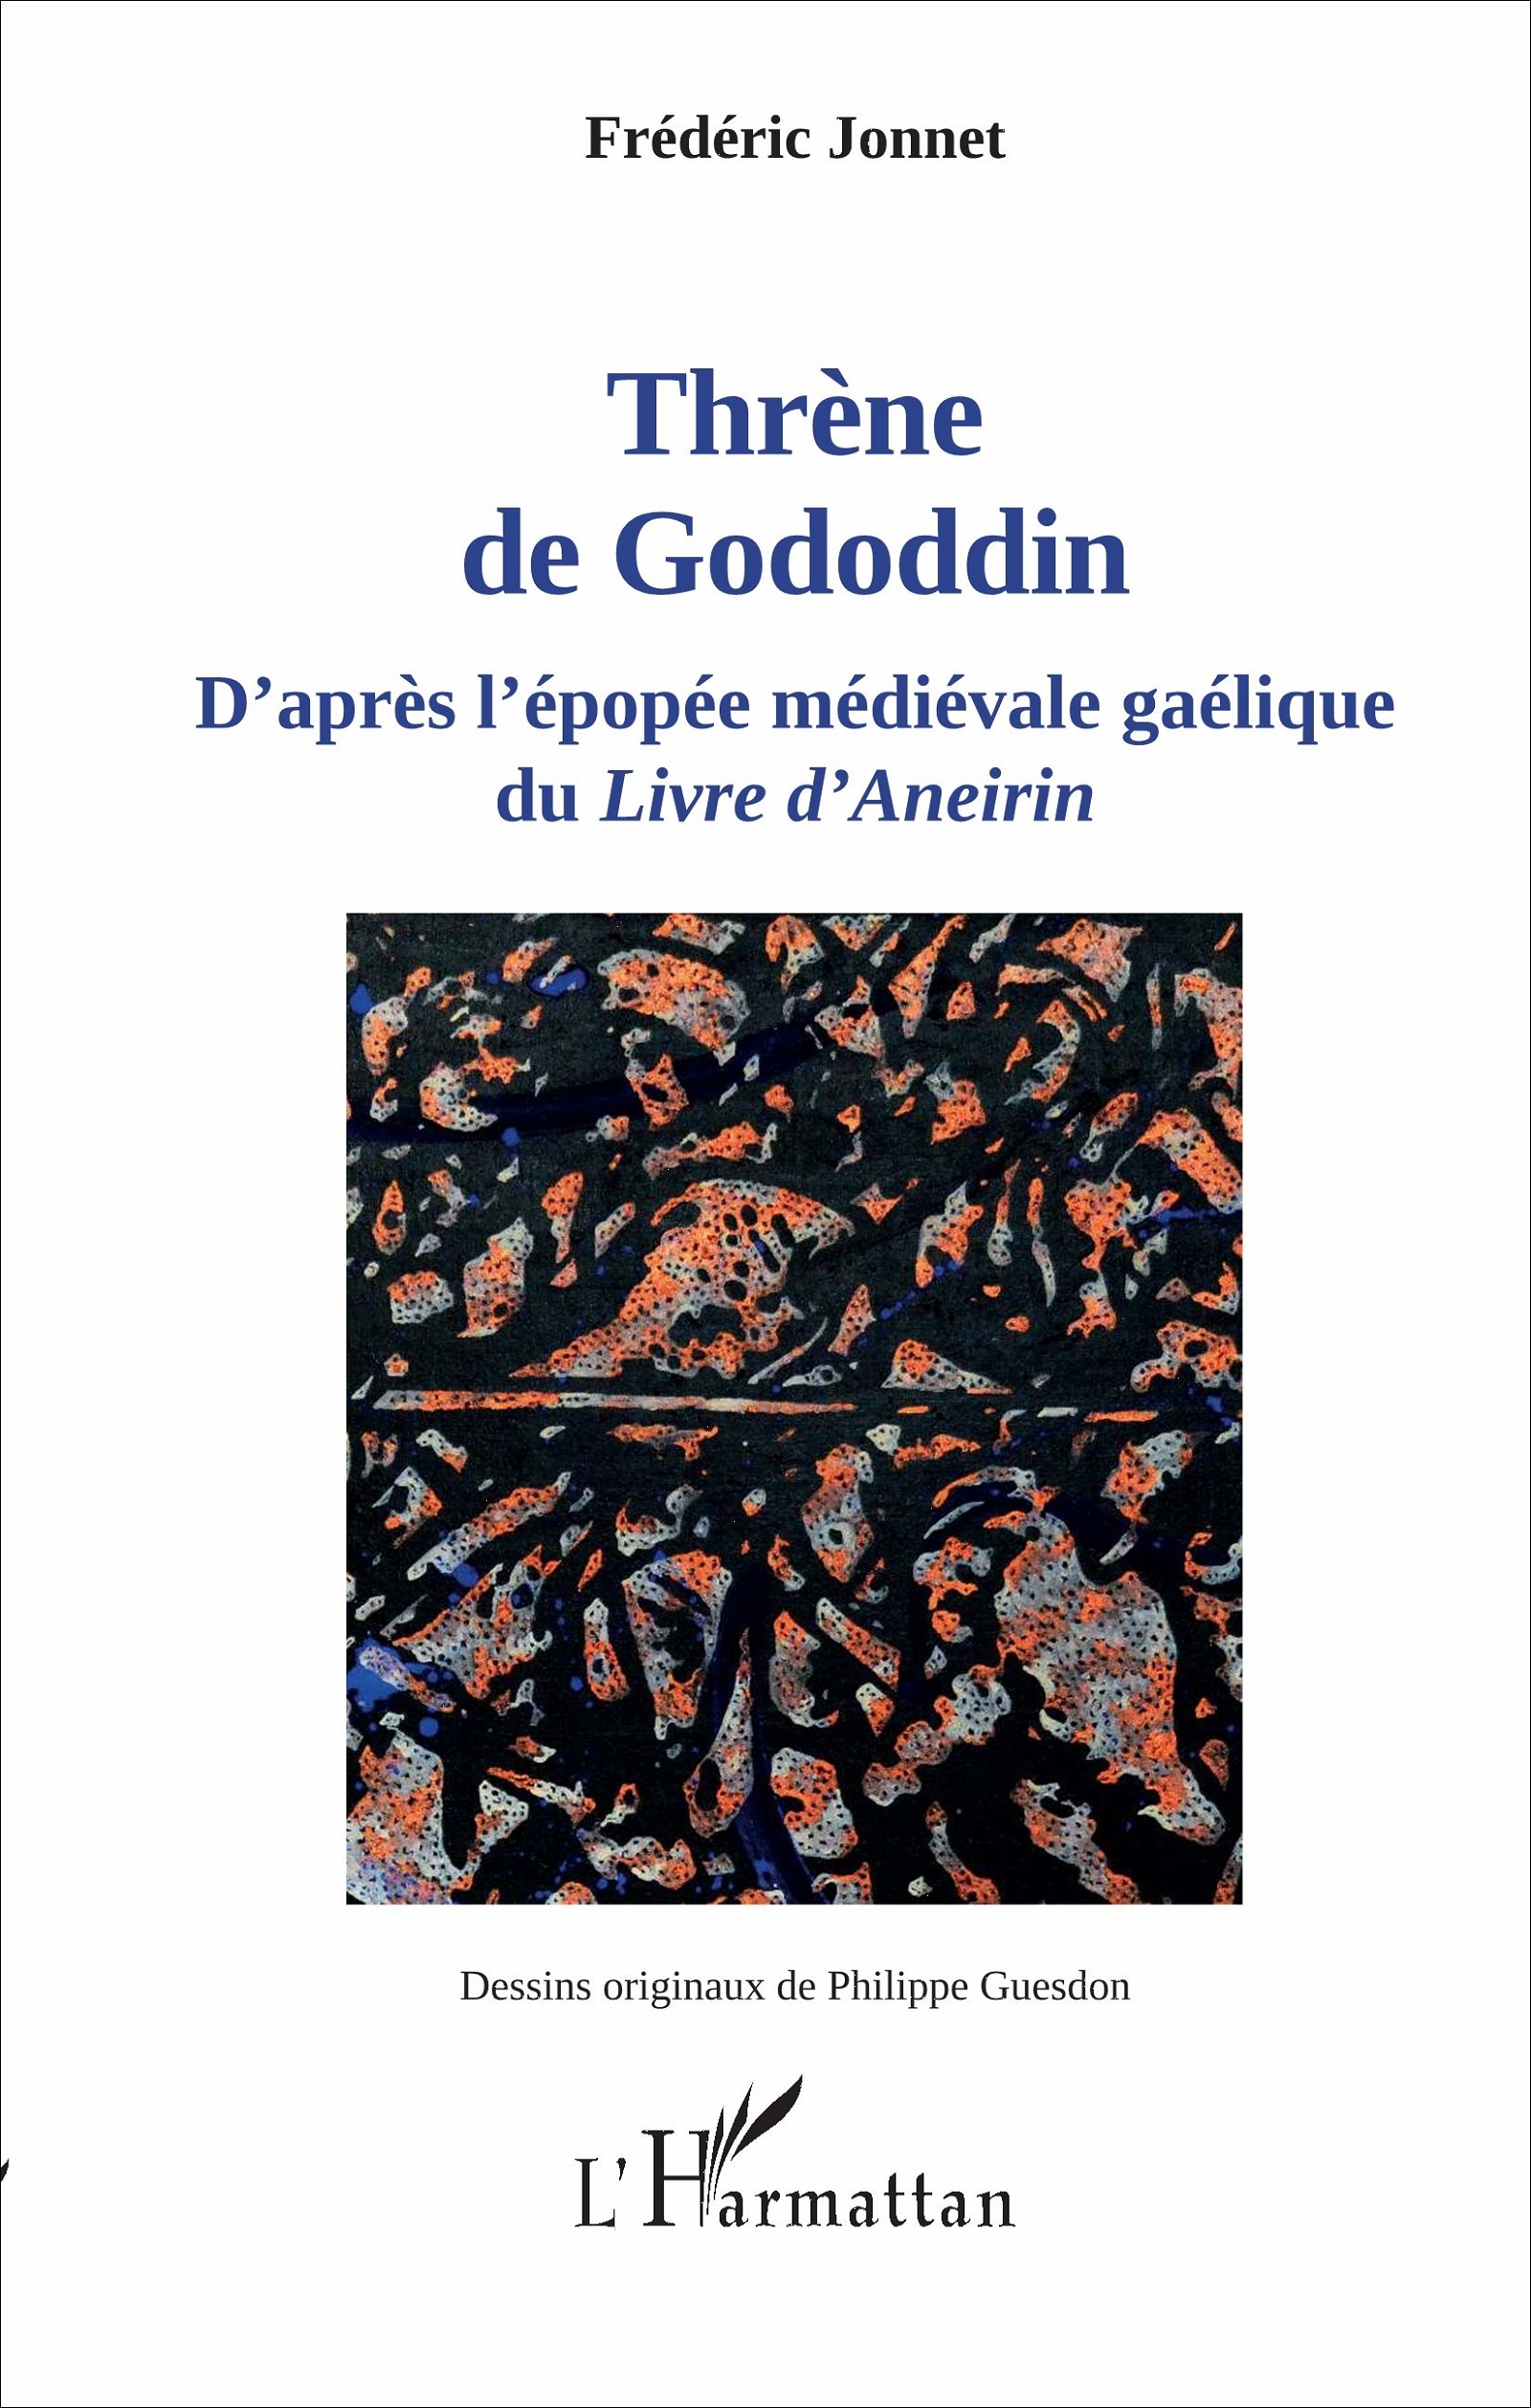 Thrène de Gododdin, D'après l'épopée médiévale gaélique du Livre d' Aneirin (9782343114439-front-cover)